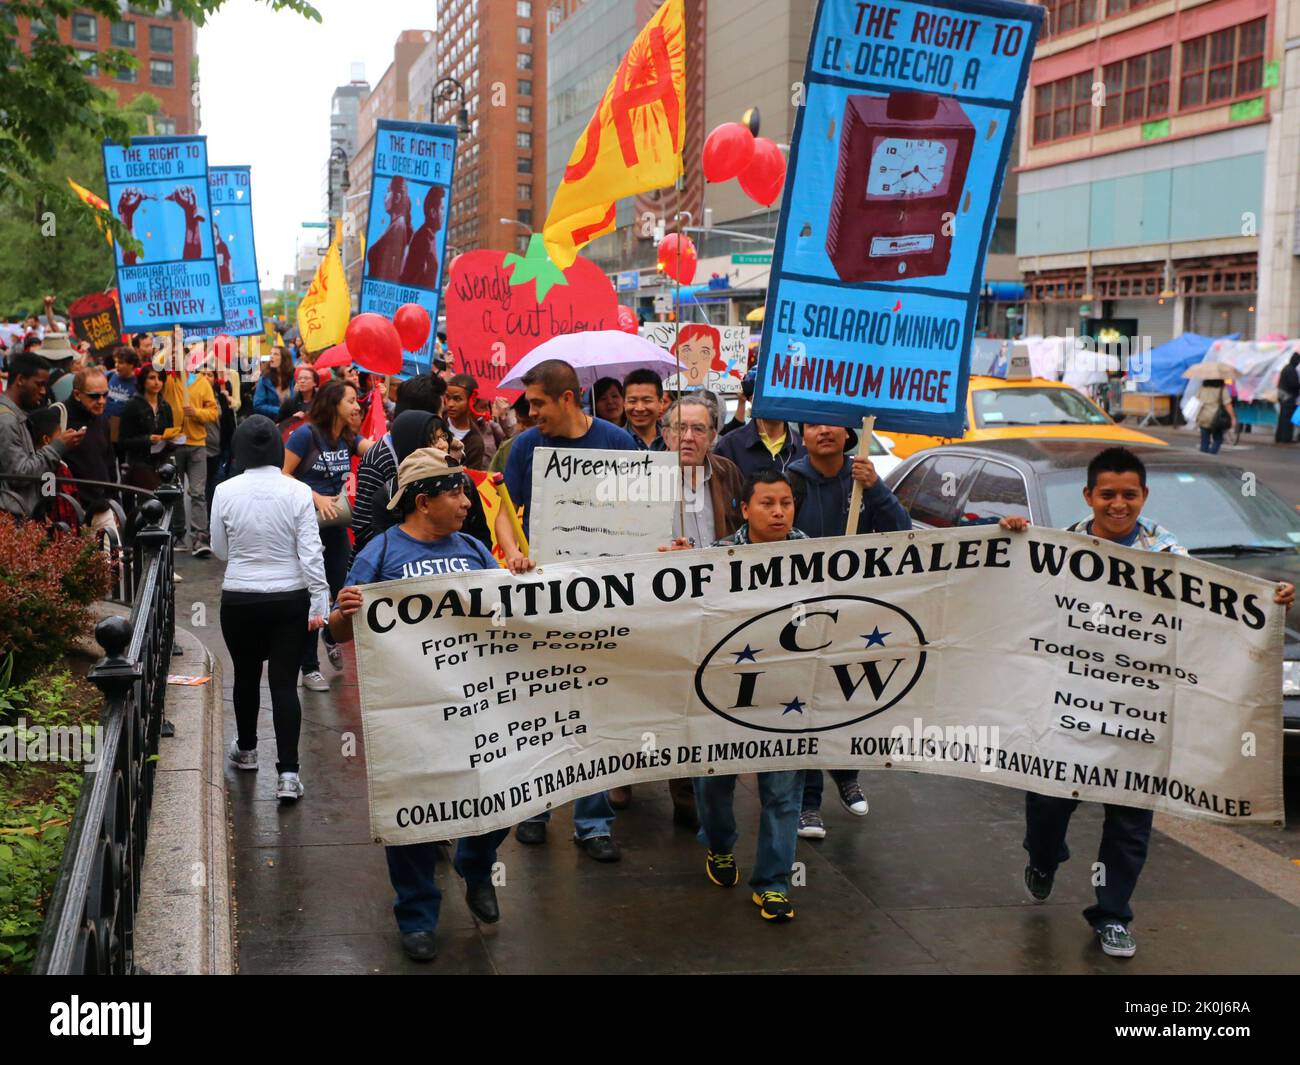 Nueva York, 18 de mayo de 2013. Coalición de trabajadores de Immokalee, y aliados marchan por Fair Food para traer conciencia de ... ver add'l info para el título completo Foto de stock